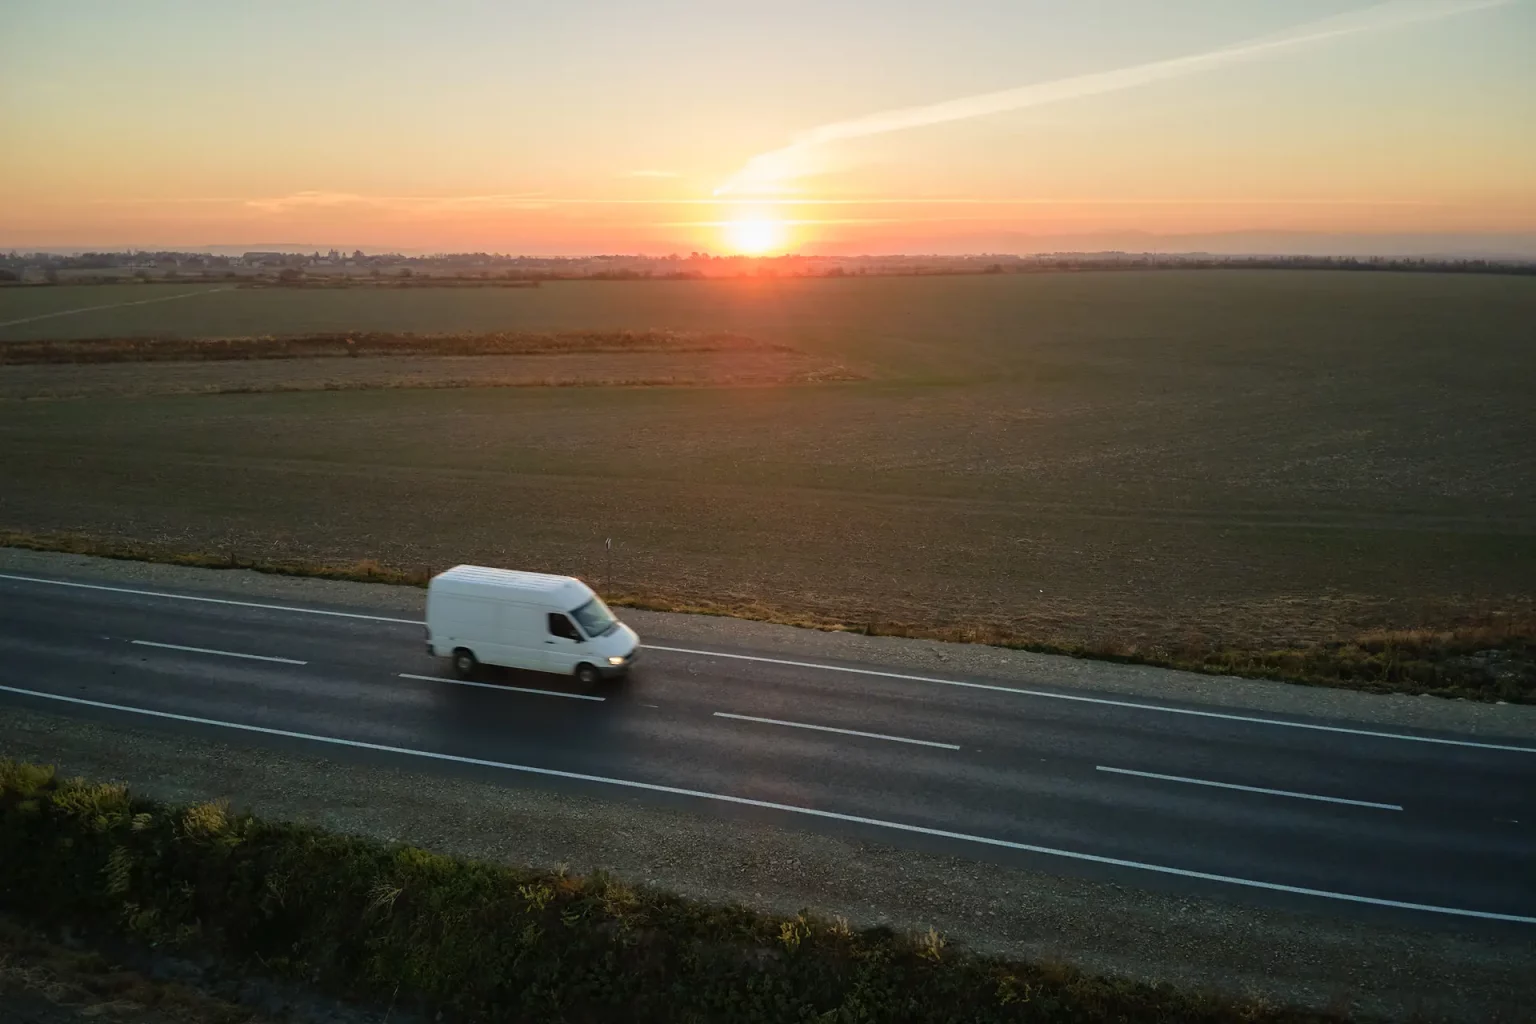 Un fourgon utilitaire blanc roulant sur une route de campagne au coucher du soleil, avec un paysage agricole et un ciel dramatique en arrière-plan.